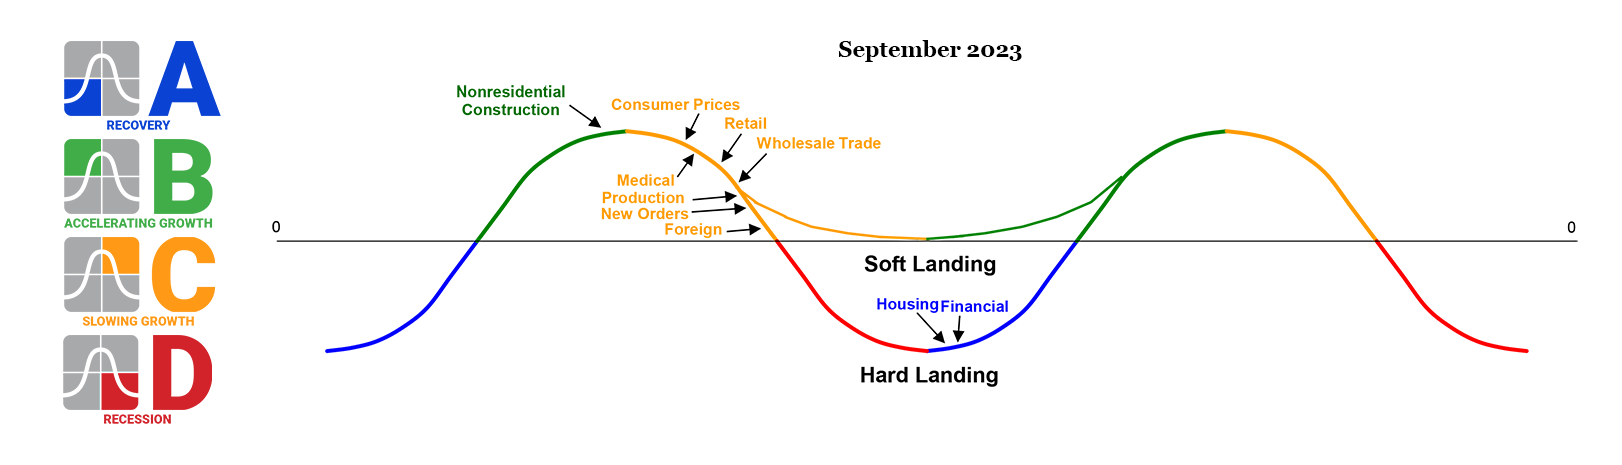 September 2023 Trends 10